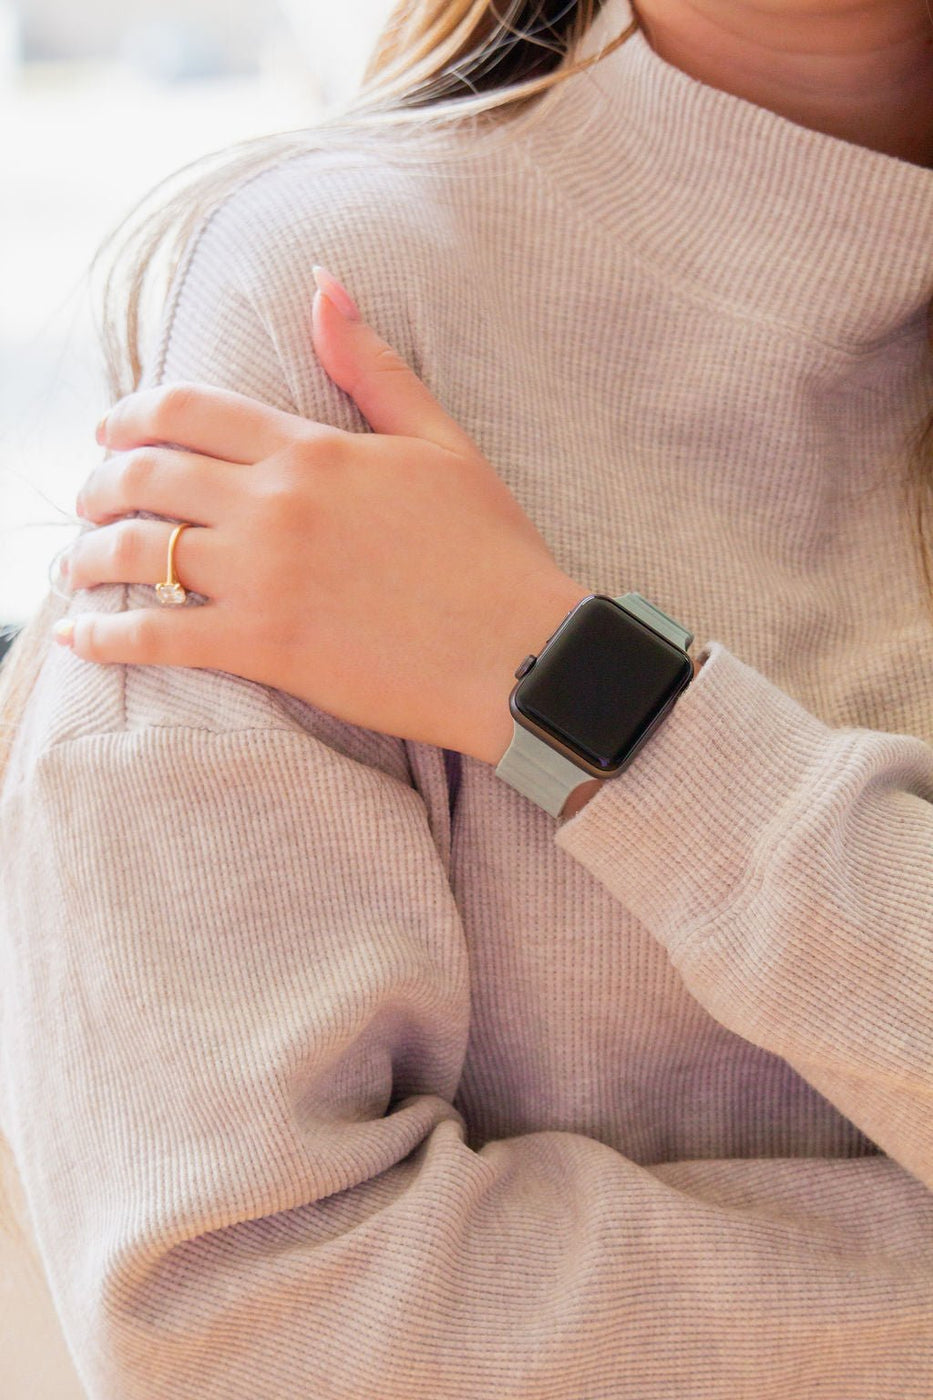 a woman wearing a watch